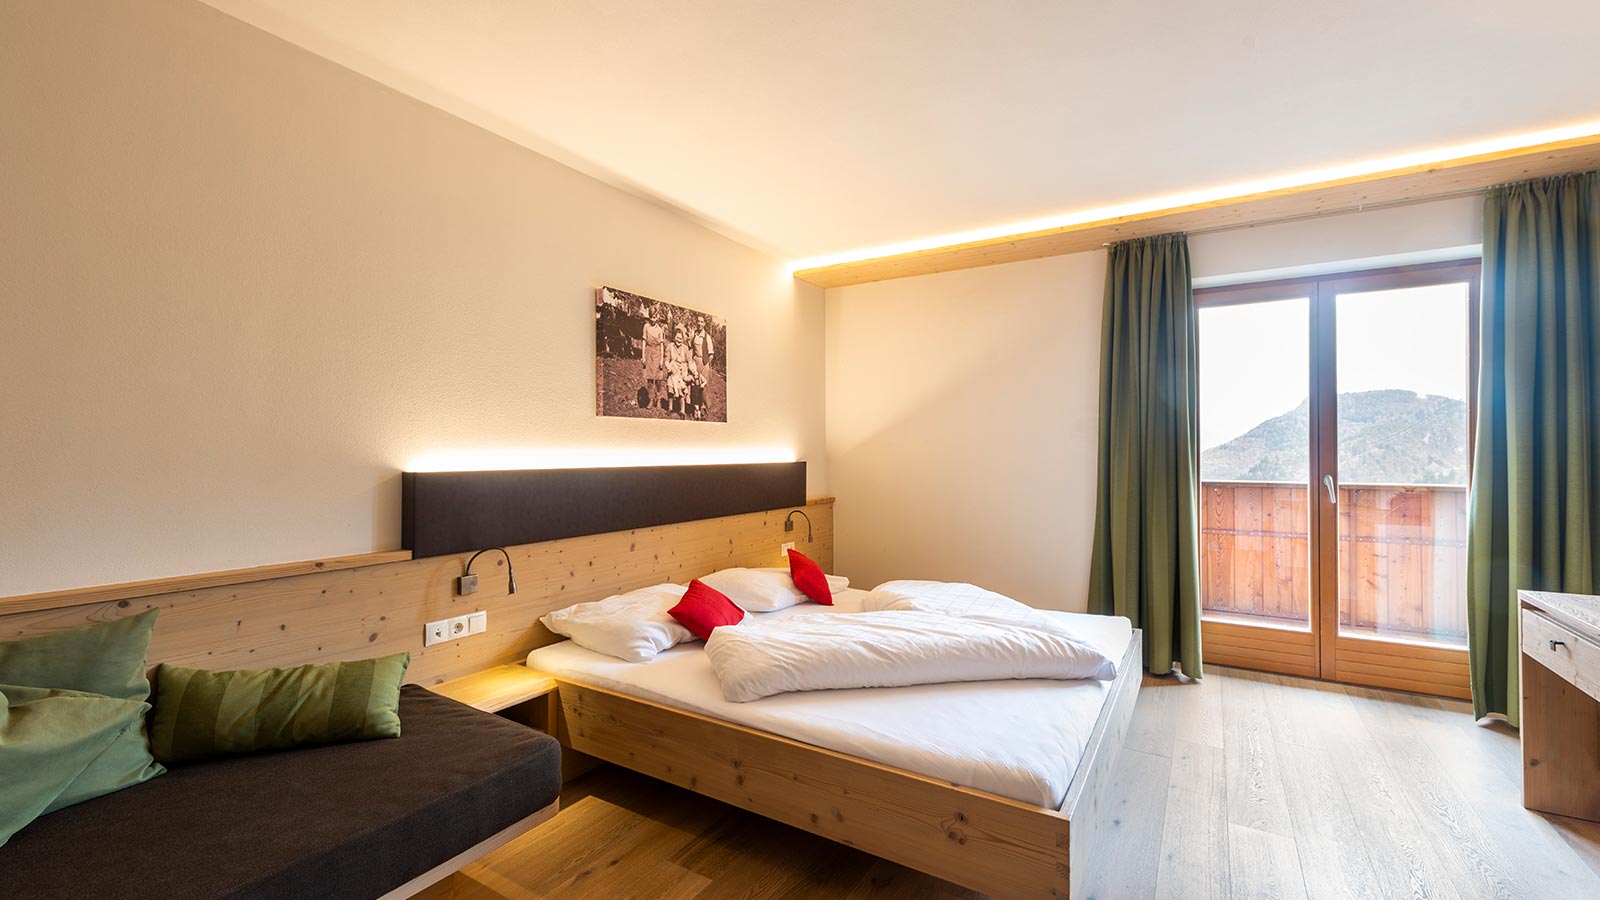 Das Zimmer des Hotels in Tiesens ist im alpinen Stil eingerichtet und mit Holz verkleidet